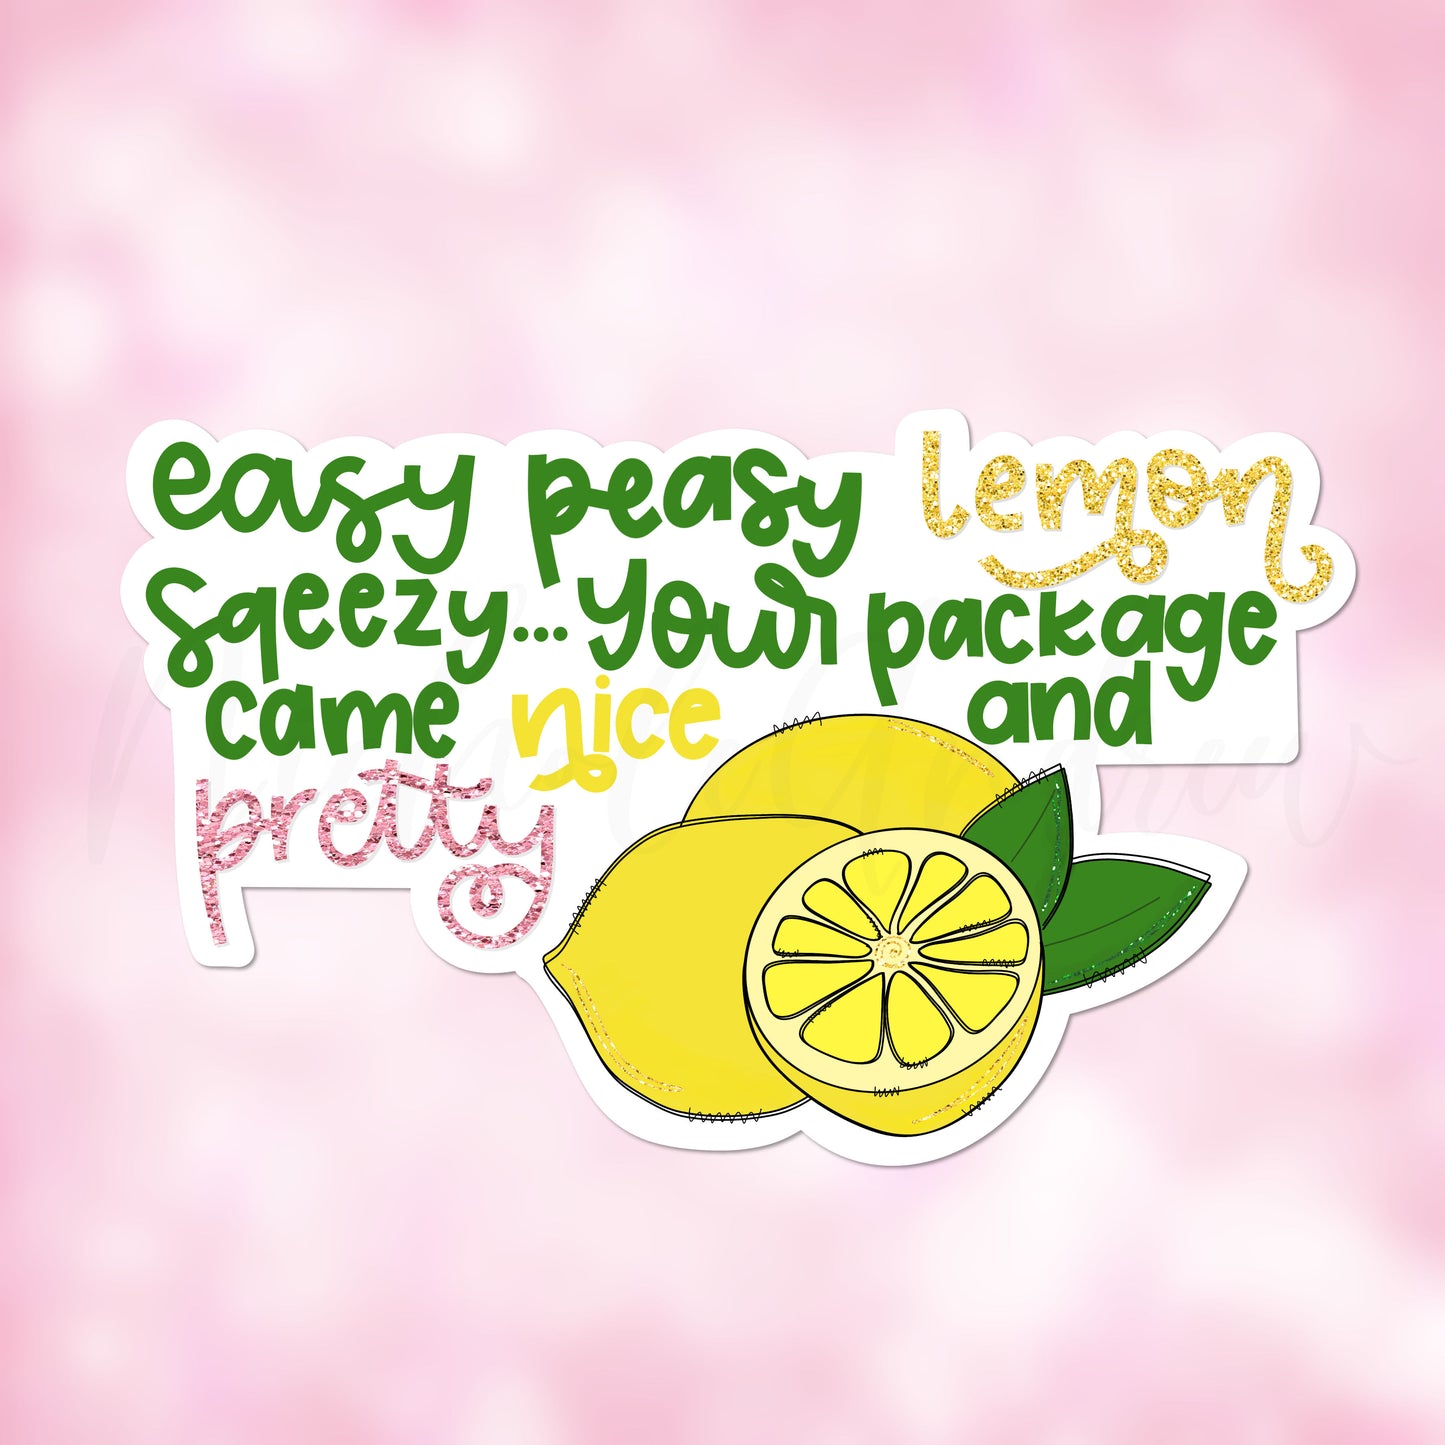 Easy Peasy Lemon Squeezy | Printable Sticker